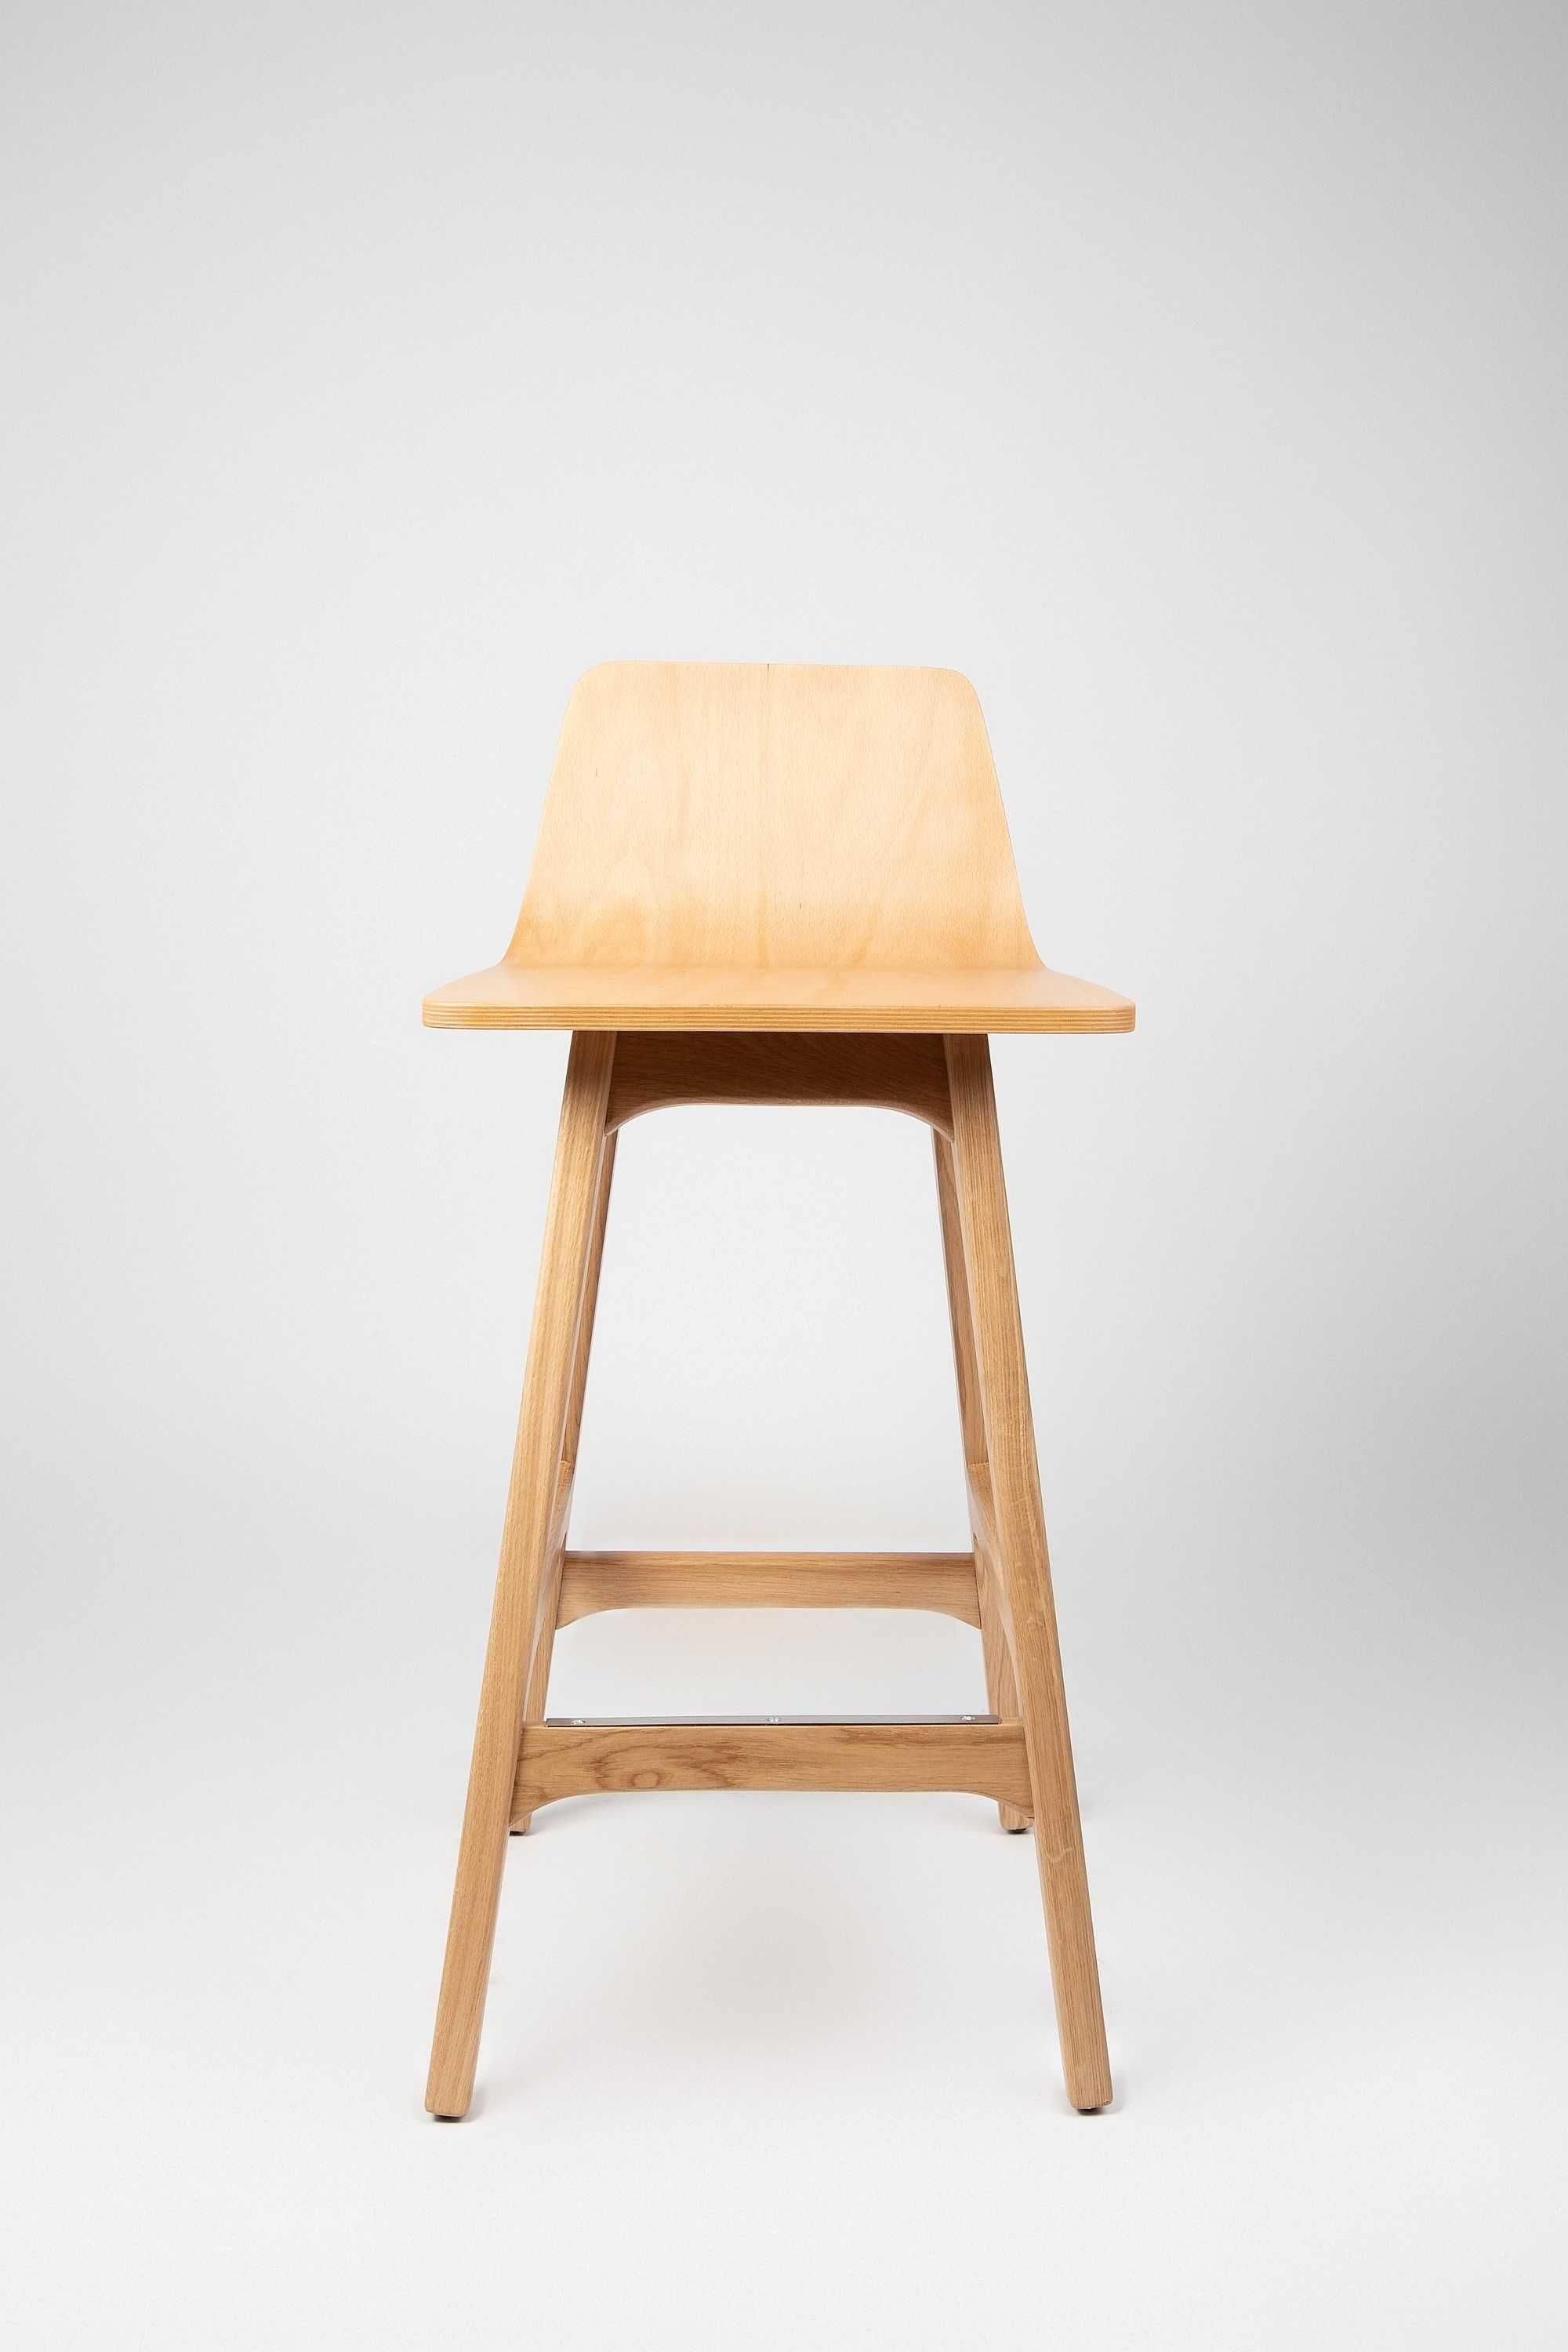 Scaun lemn, scaun pentru insulă bucătarie, scaun lemn masiv